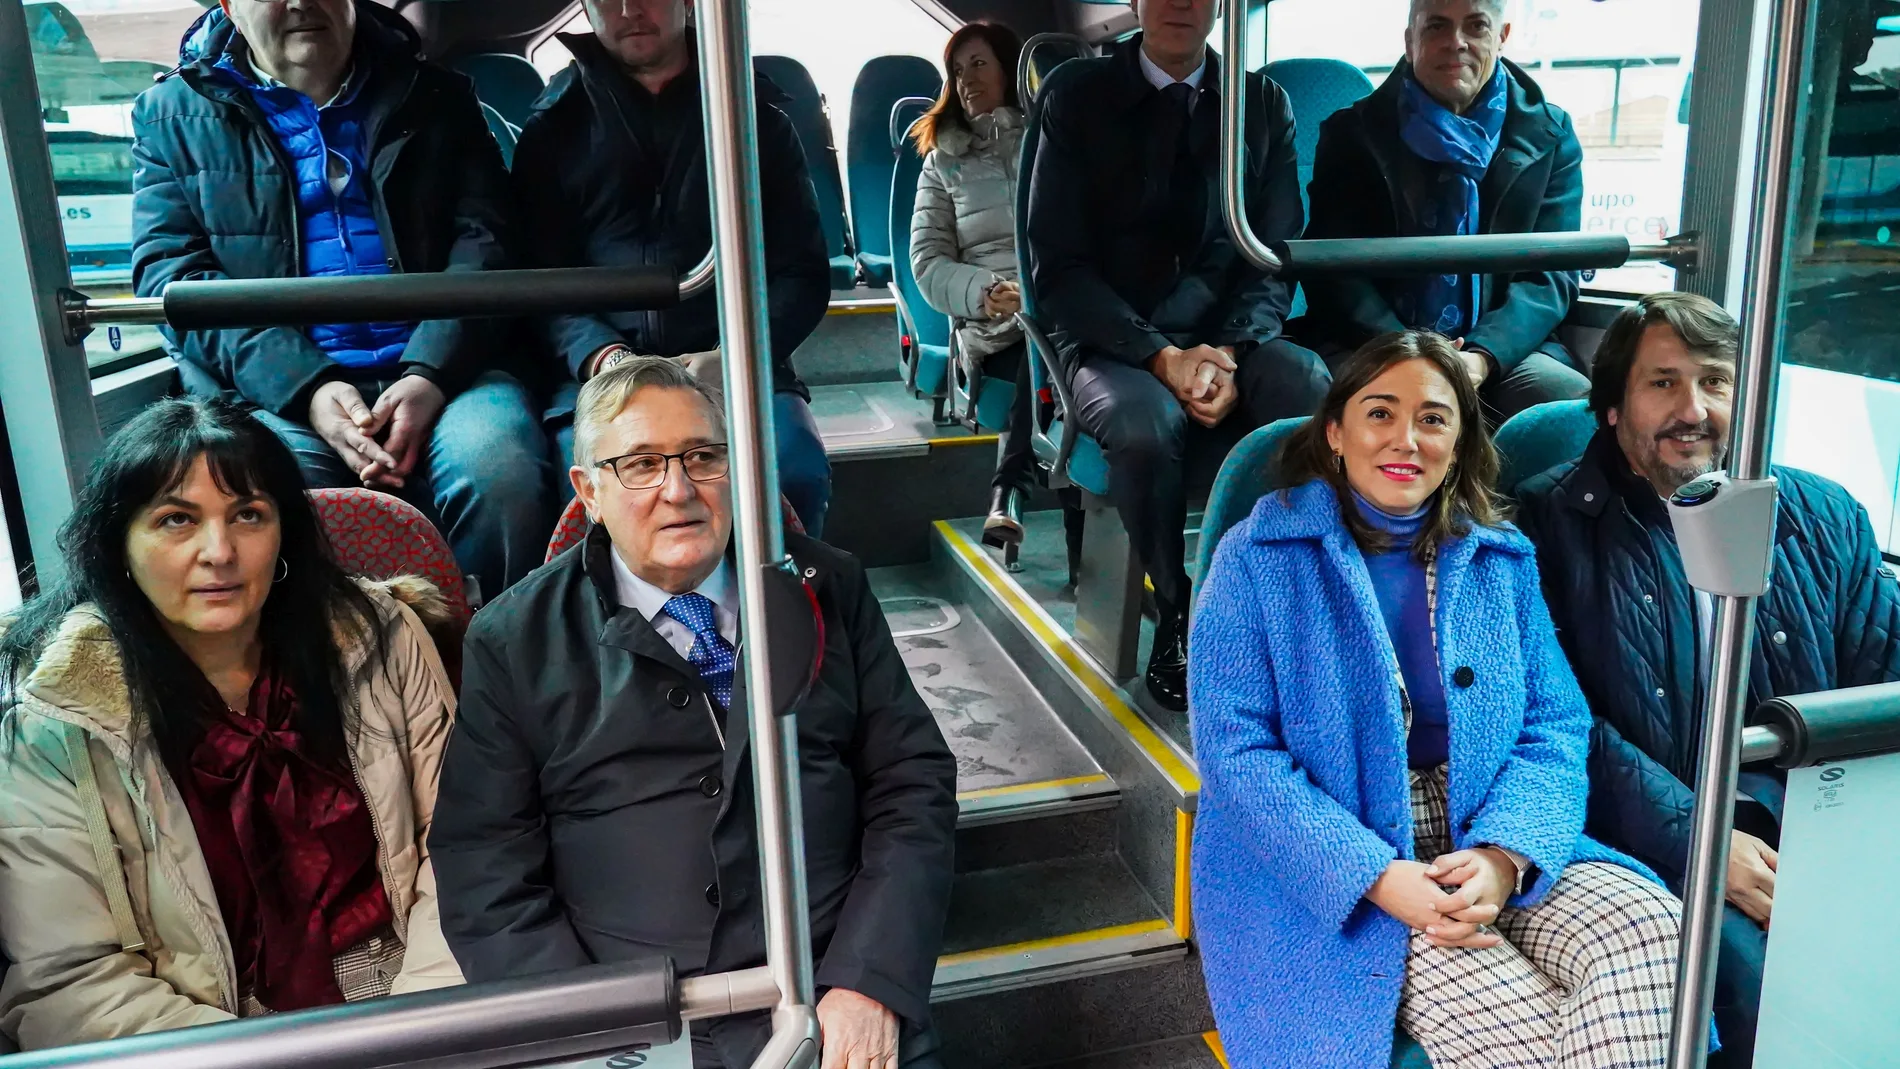  La consejera de Movilidad y Transformación Digital, María González Corral, presenta los nuevos autobuses que se incorporan a la flota del servicio de transporte público metropolitano de León junto al Ceo de Alsa, Francisco Iglesias y a los alcaldes de los municipios beneficiados por el servicio